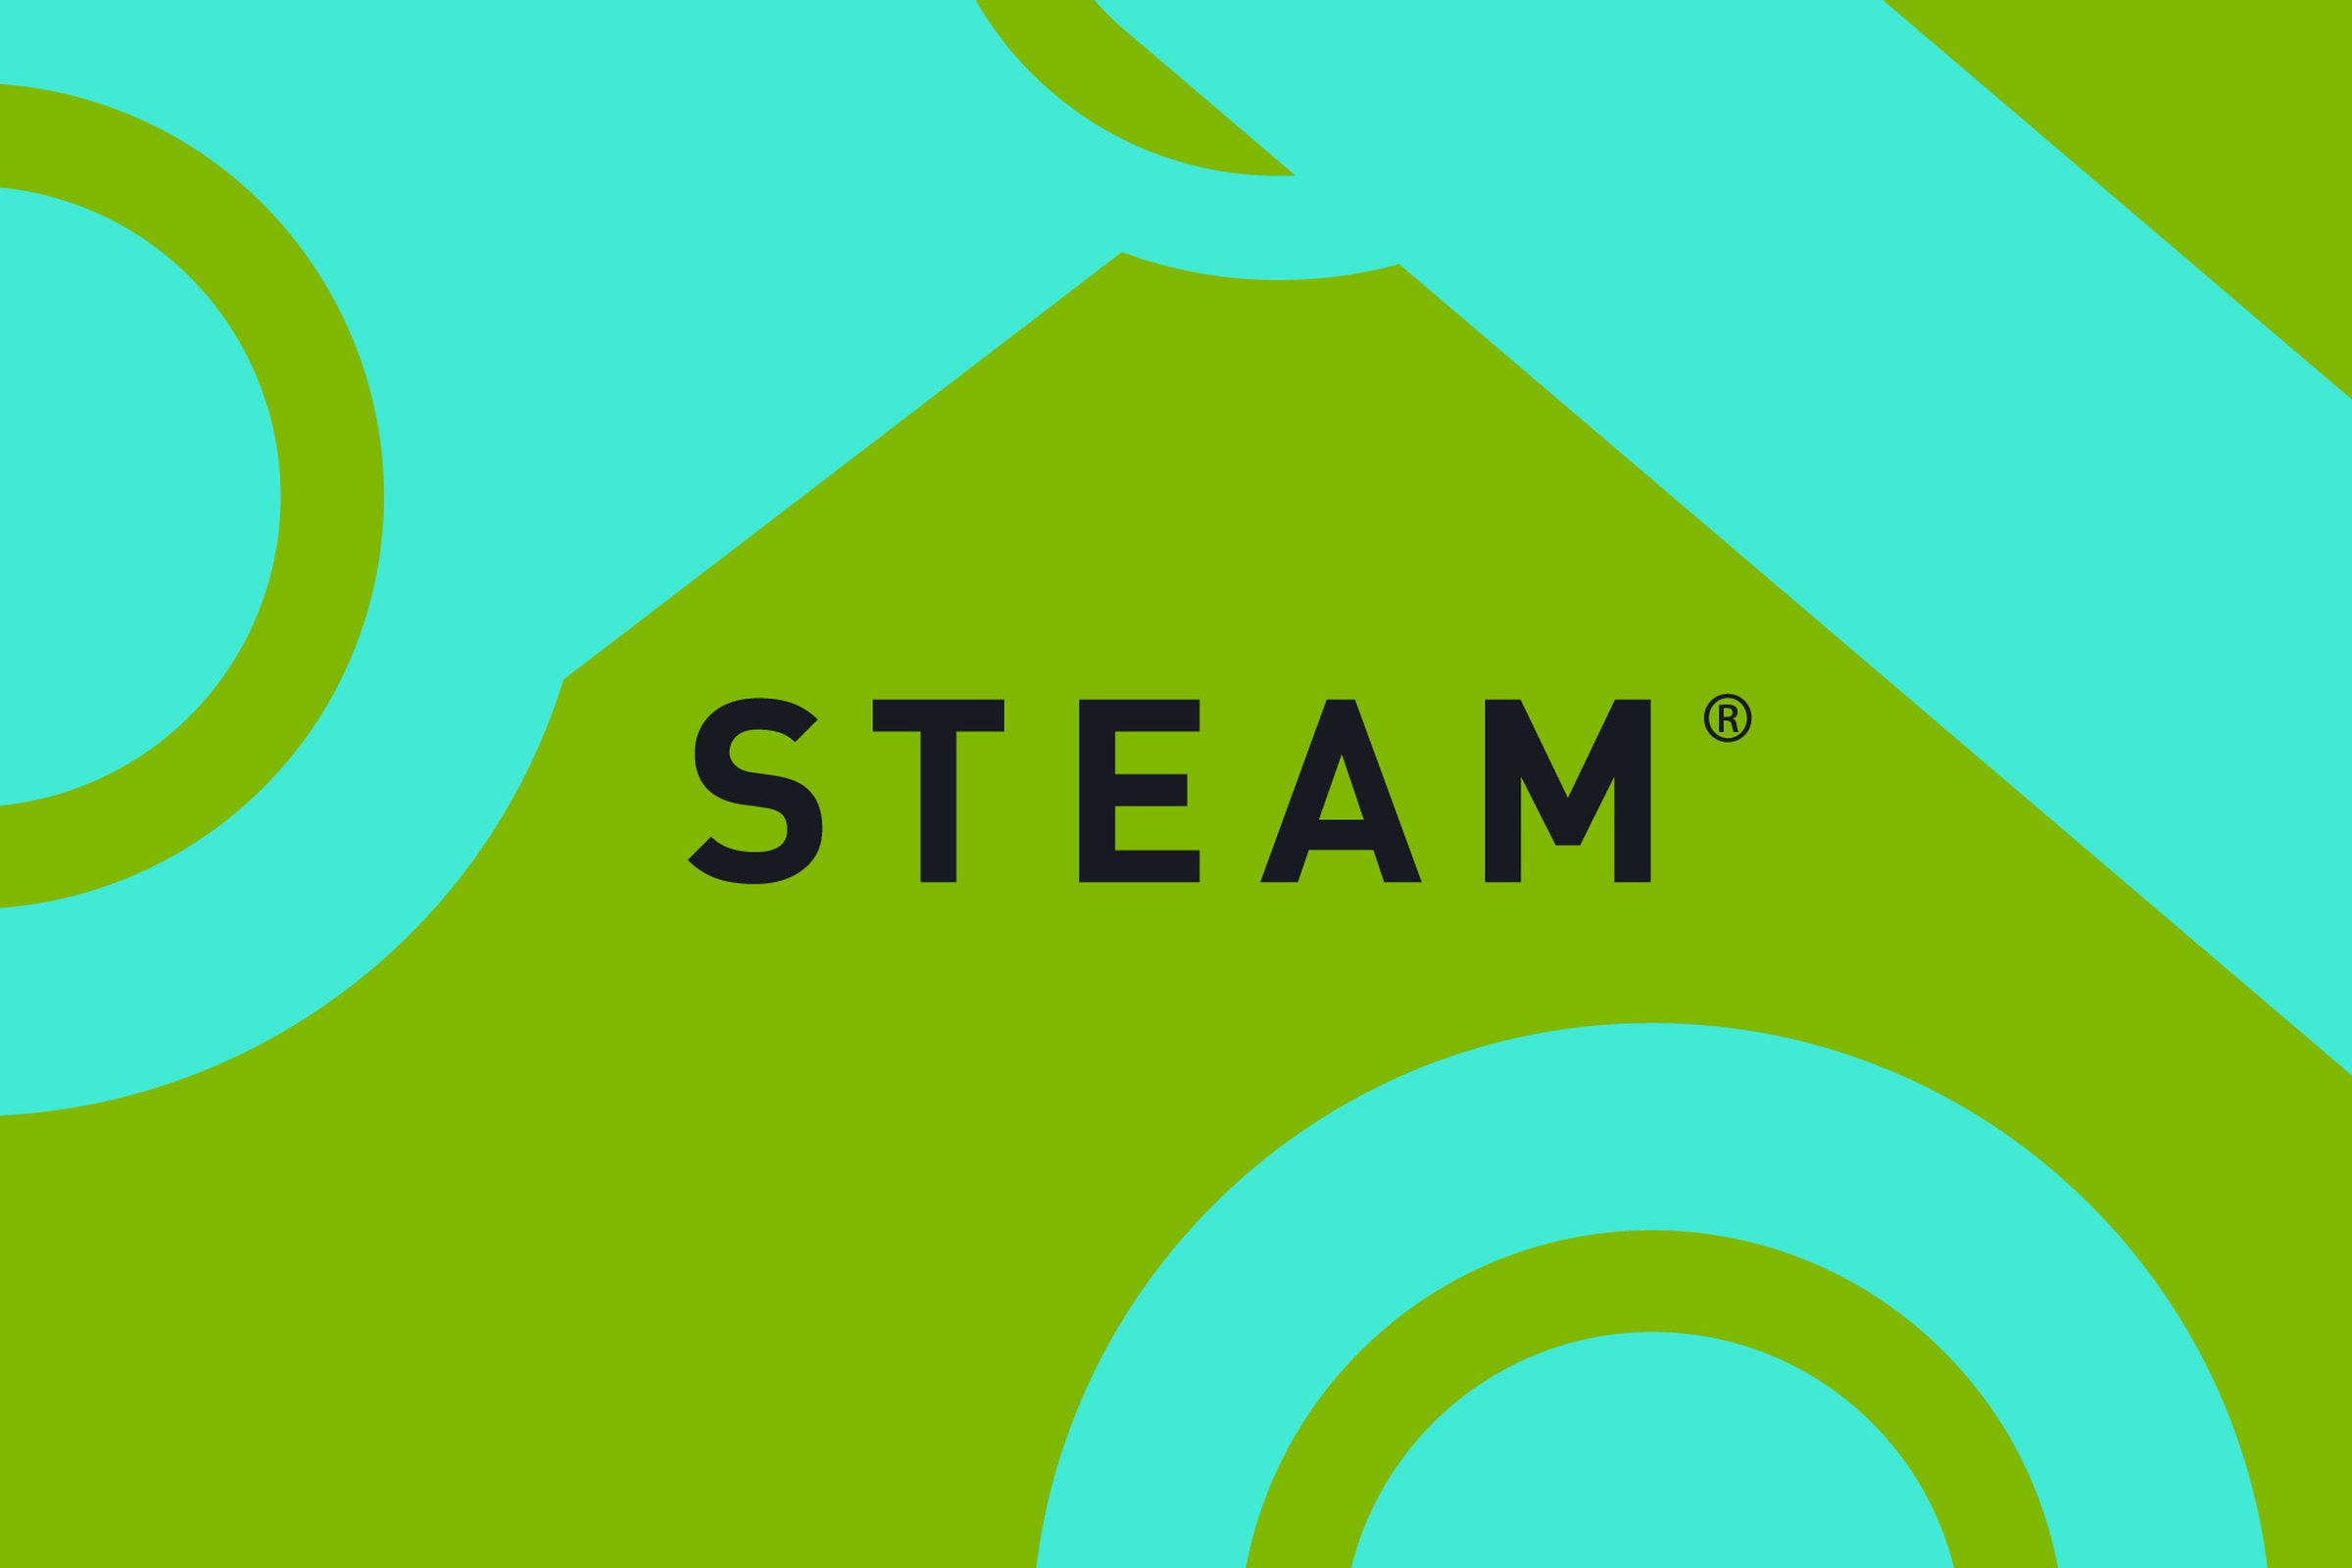 The Steam logo